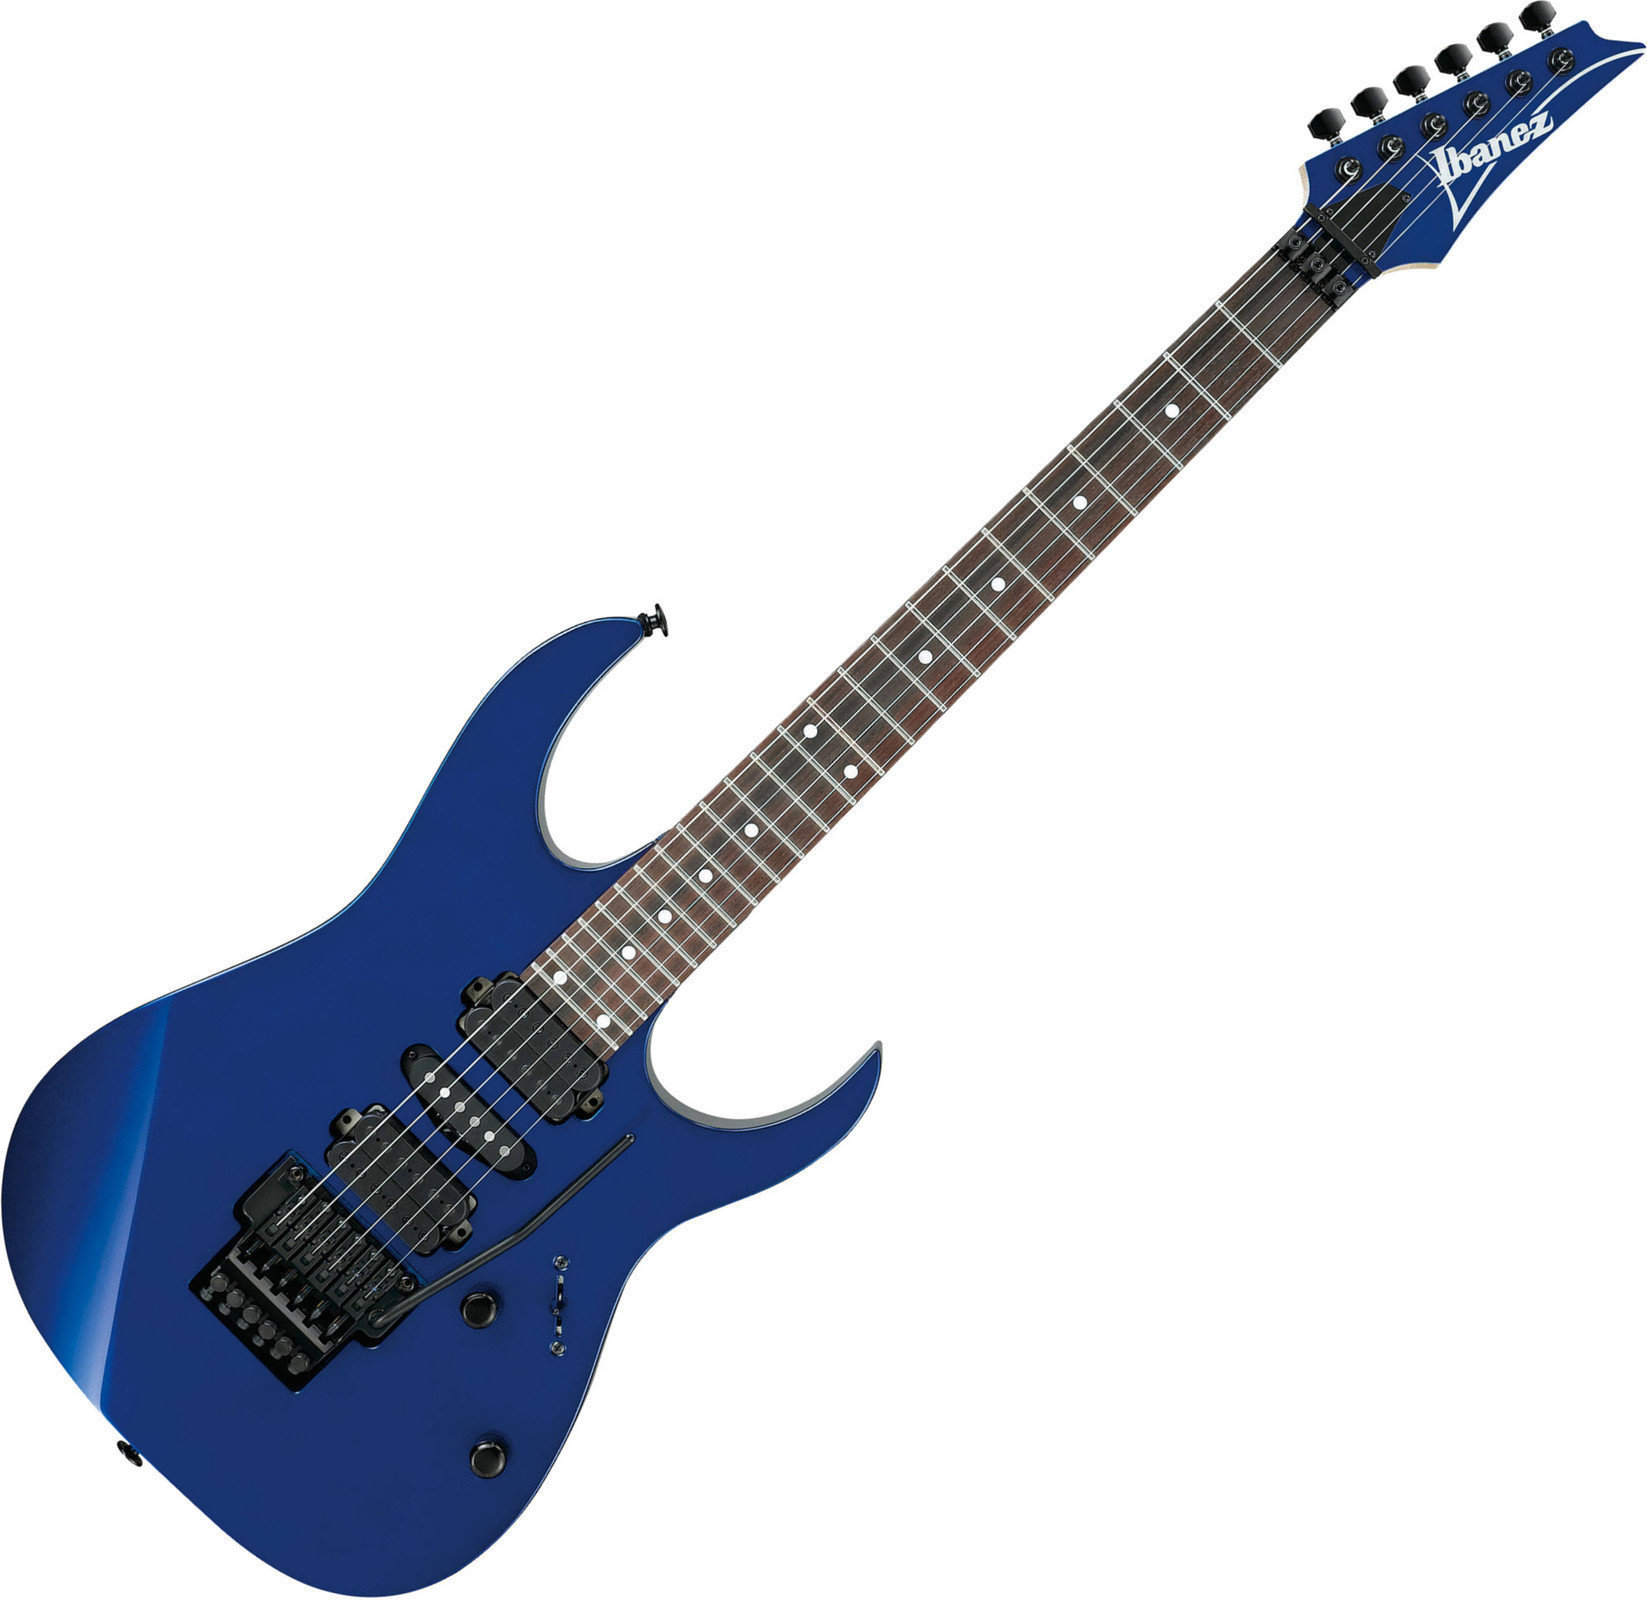 Ηλεκτρική Κιθάρα Ibanez RG570 Jewel Blue